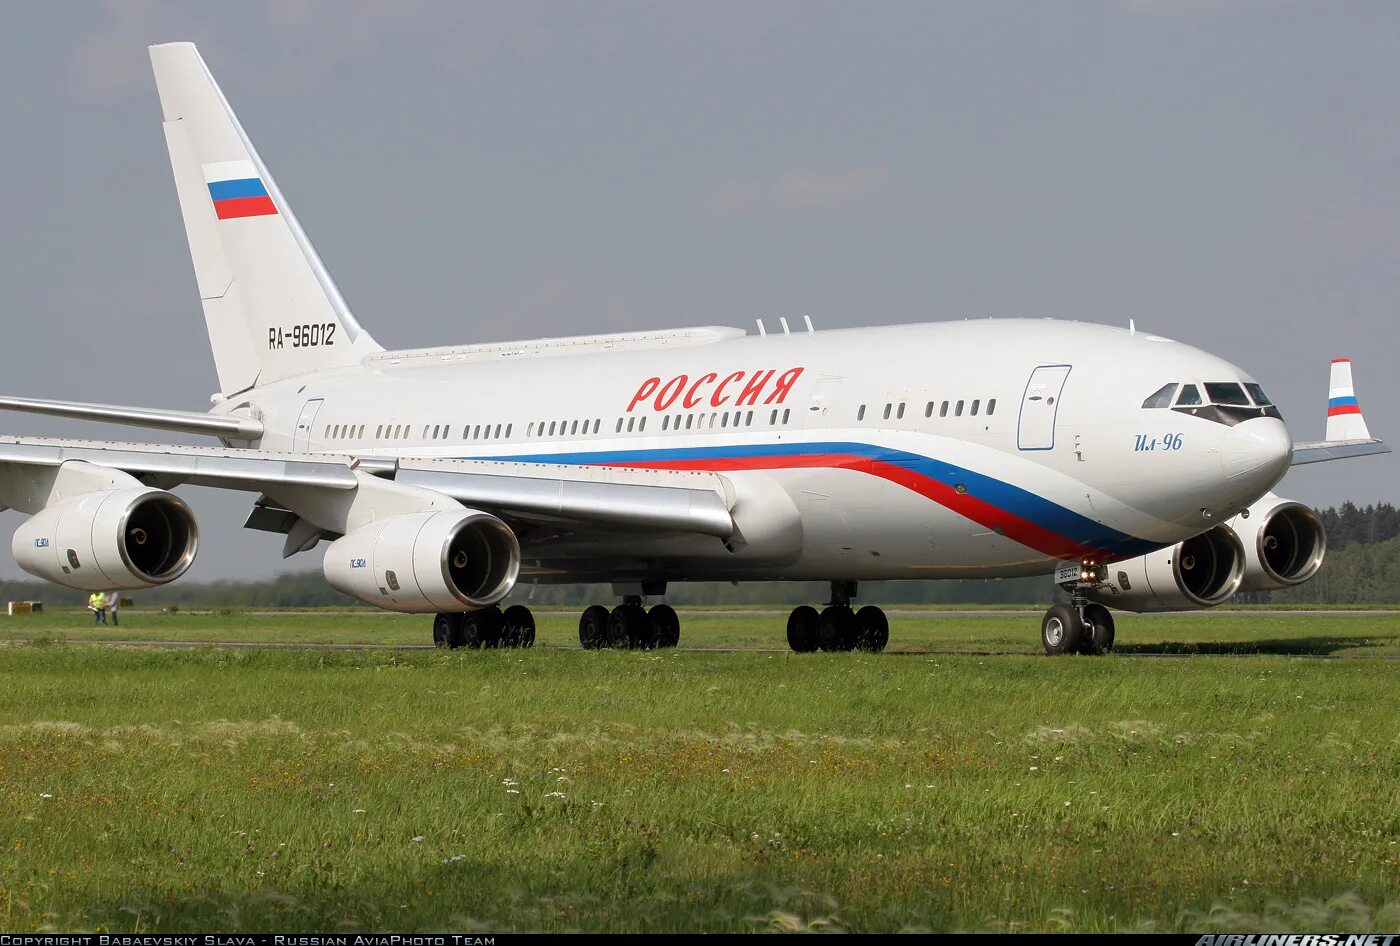 Ил 96 борт 1. Ил-96 президентский борт. Самолёт президента России ил 96. Ил-96-300 президентский.